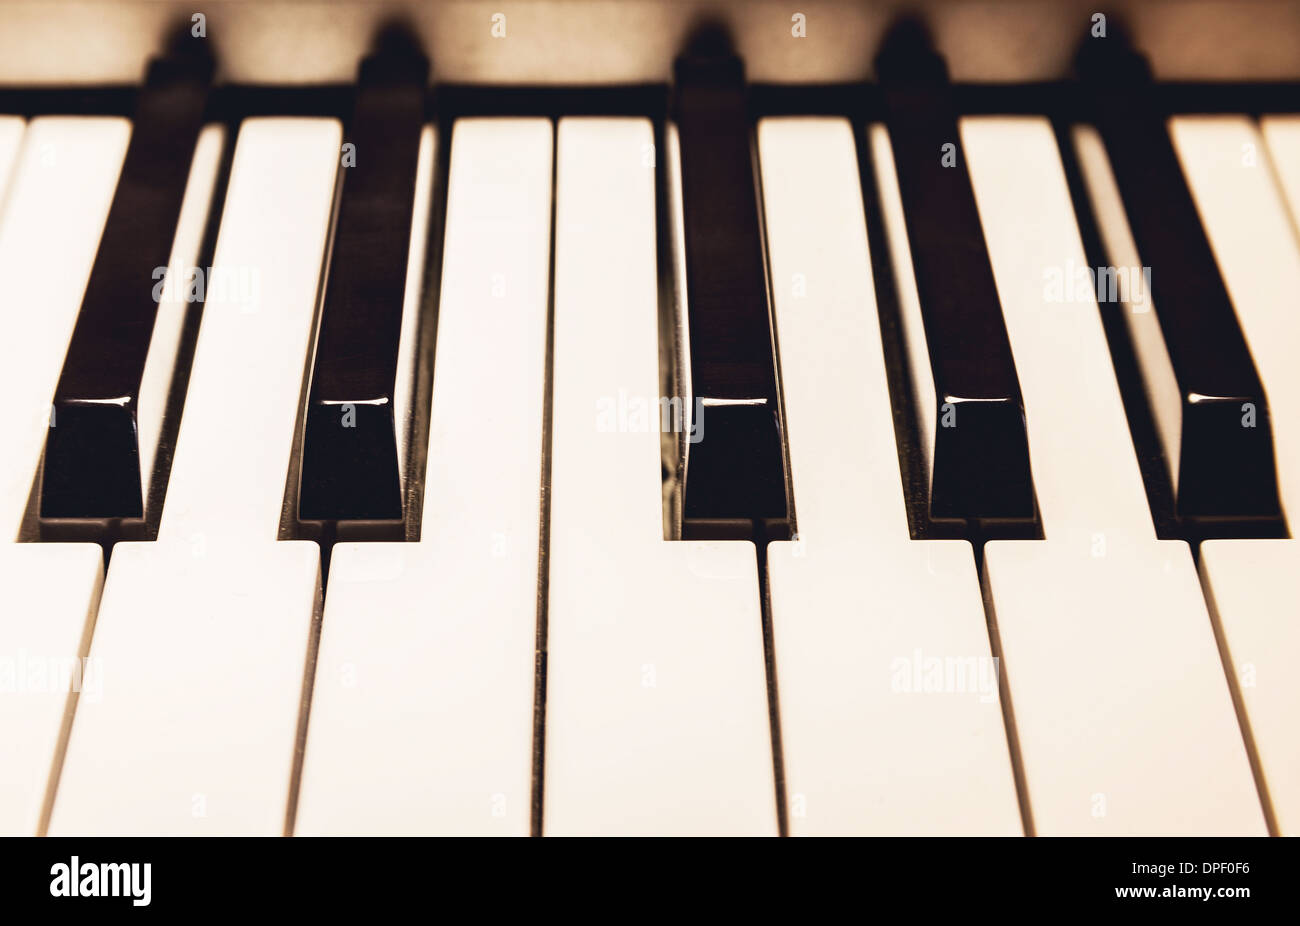 Detalles de Piano, teclas de sólo blanco y negro Fotografía de stock - Alamy